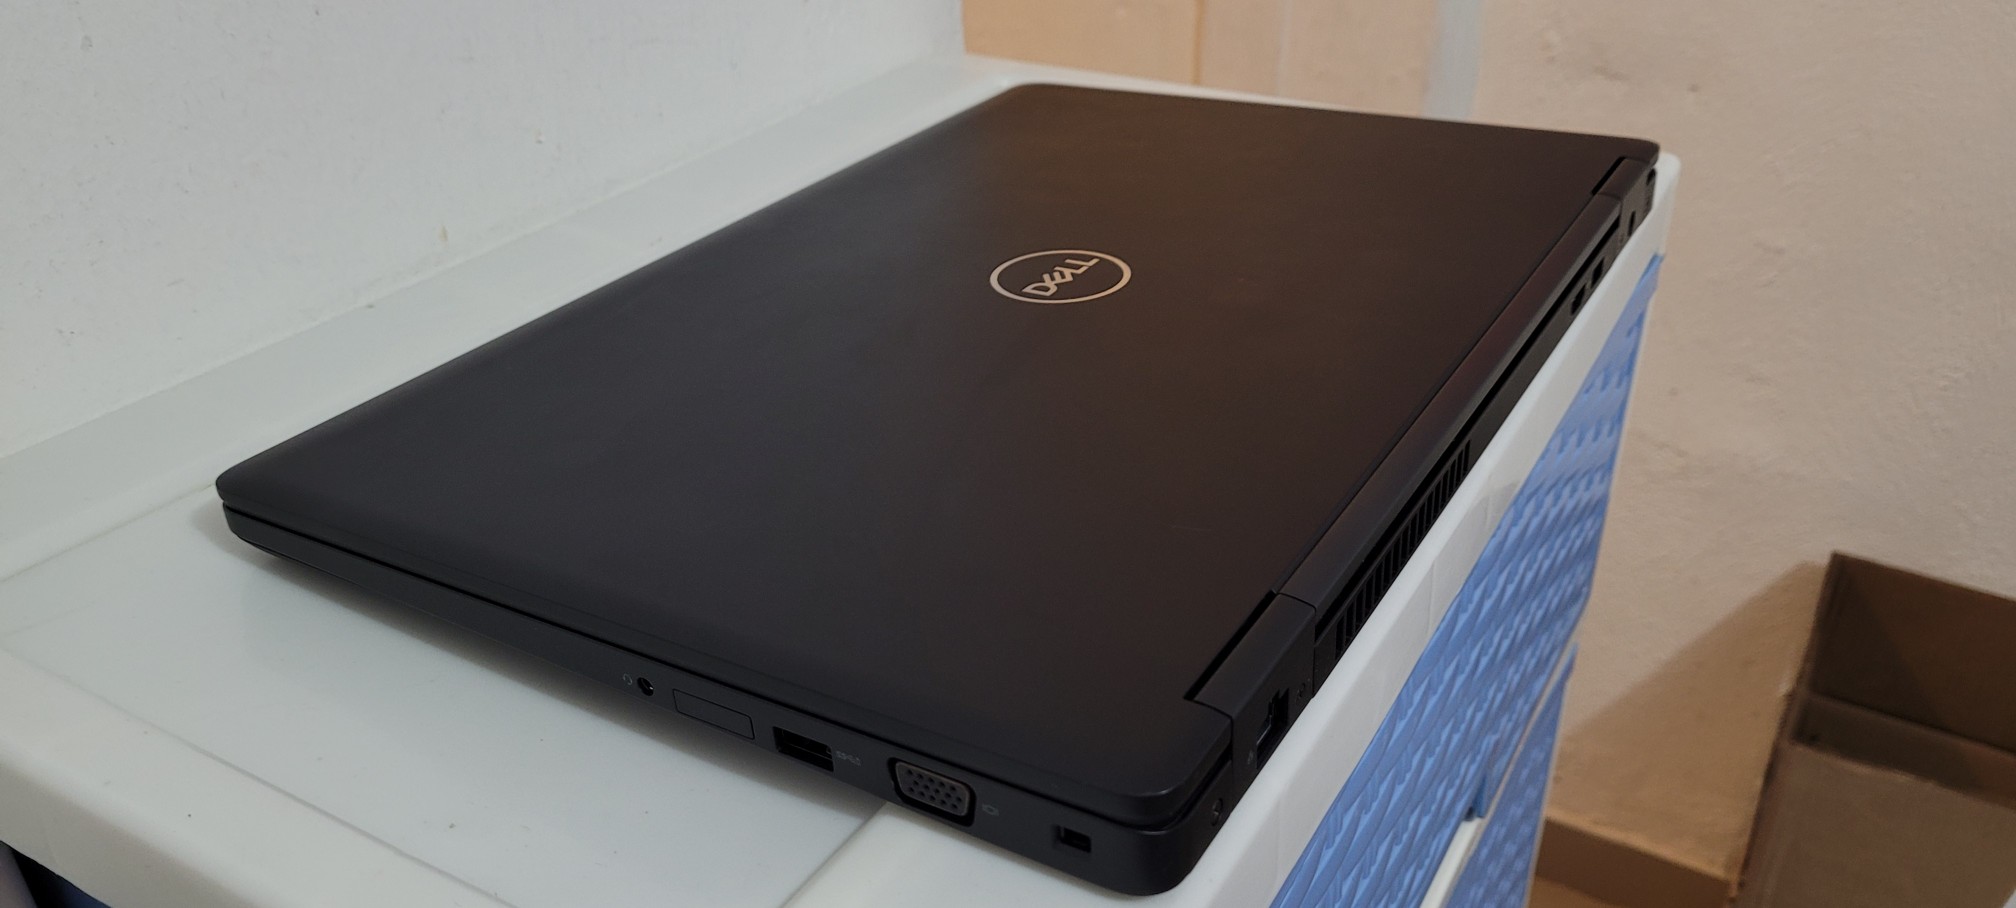 computadoras y laptops - Laptop Dell 5590 17 Pulg Core i5 8va Gen Ram 16gb Disco 512gb SSD Solido  2